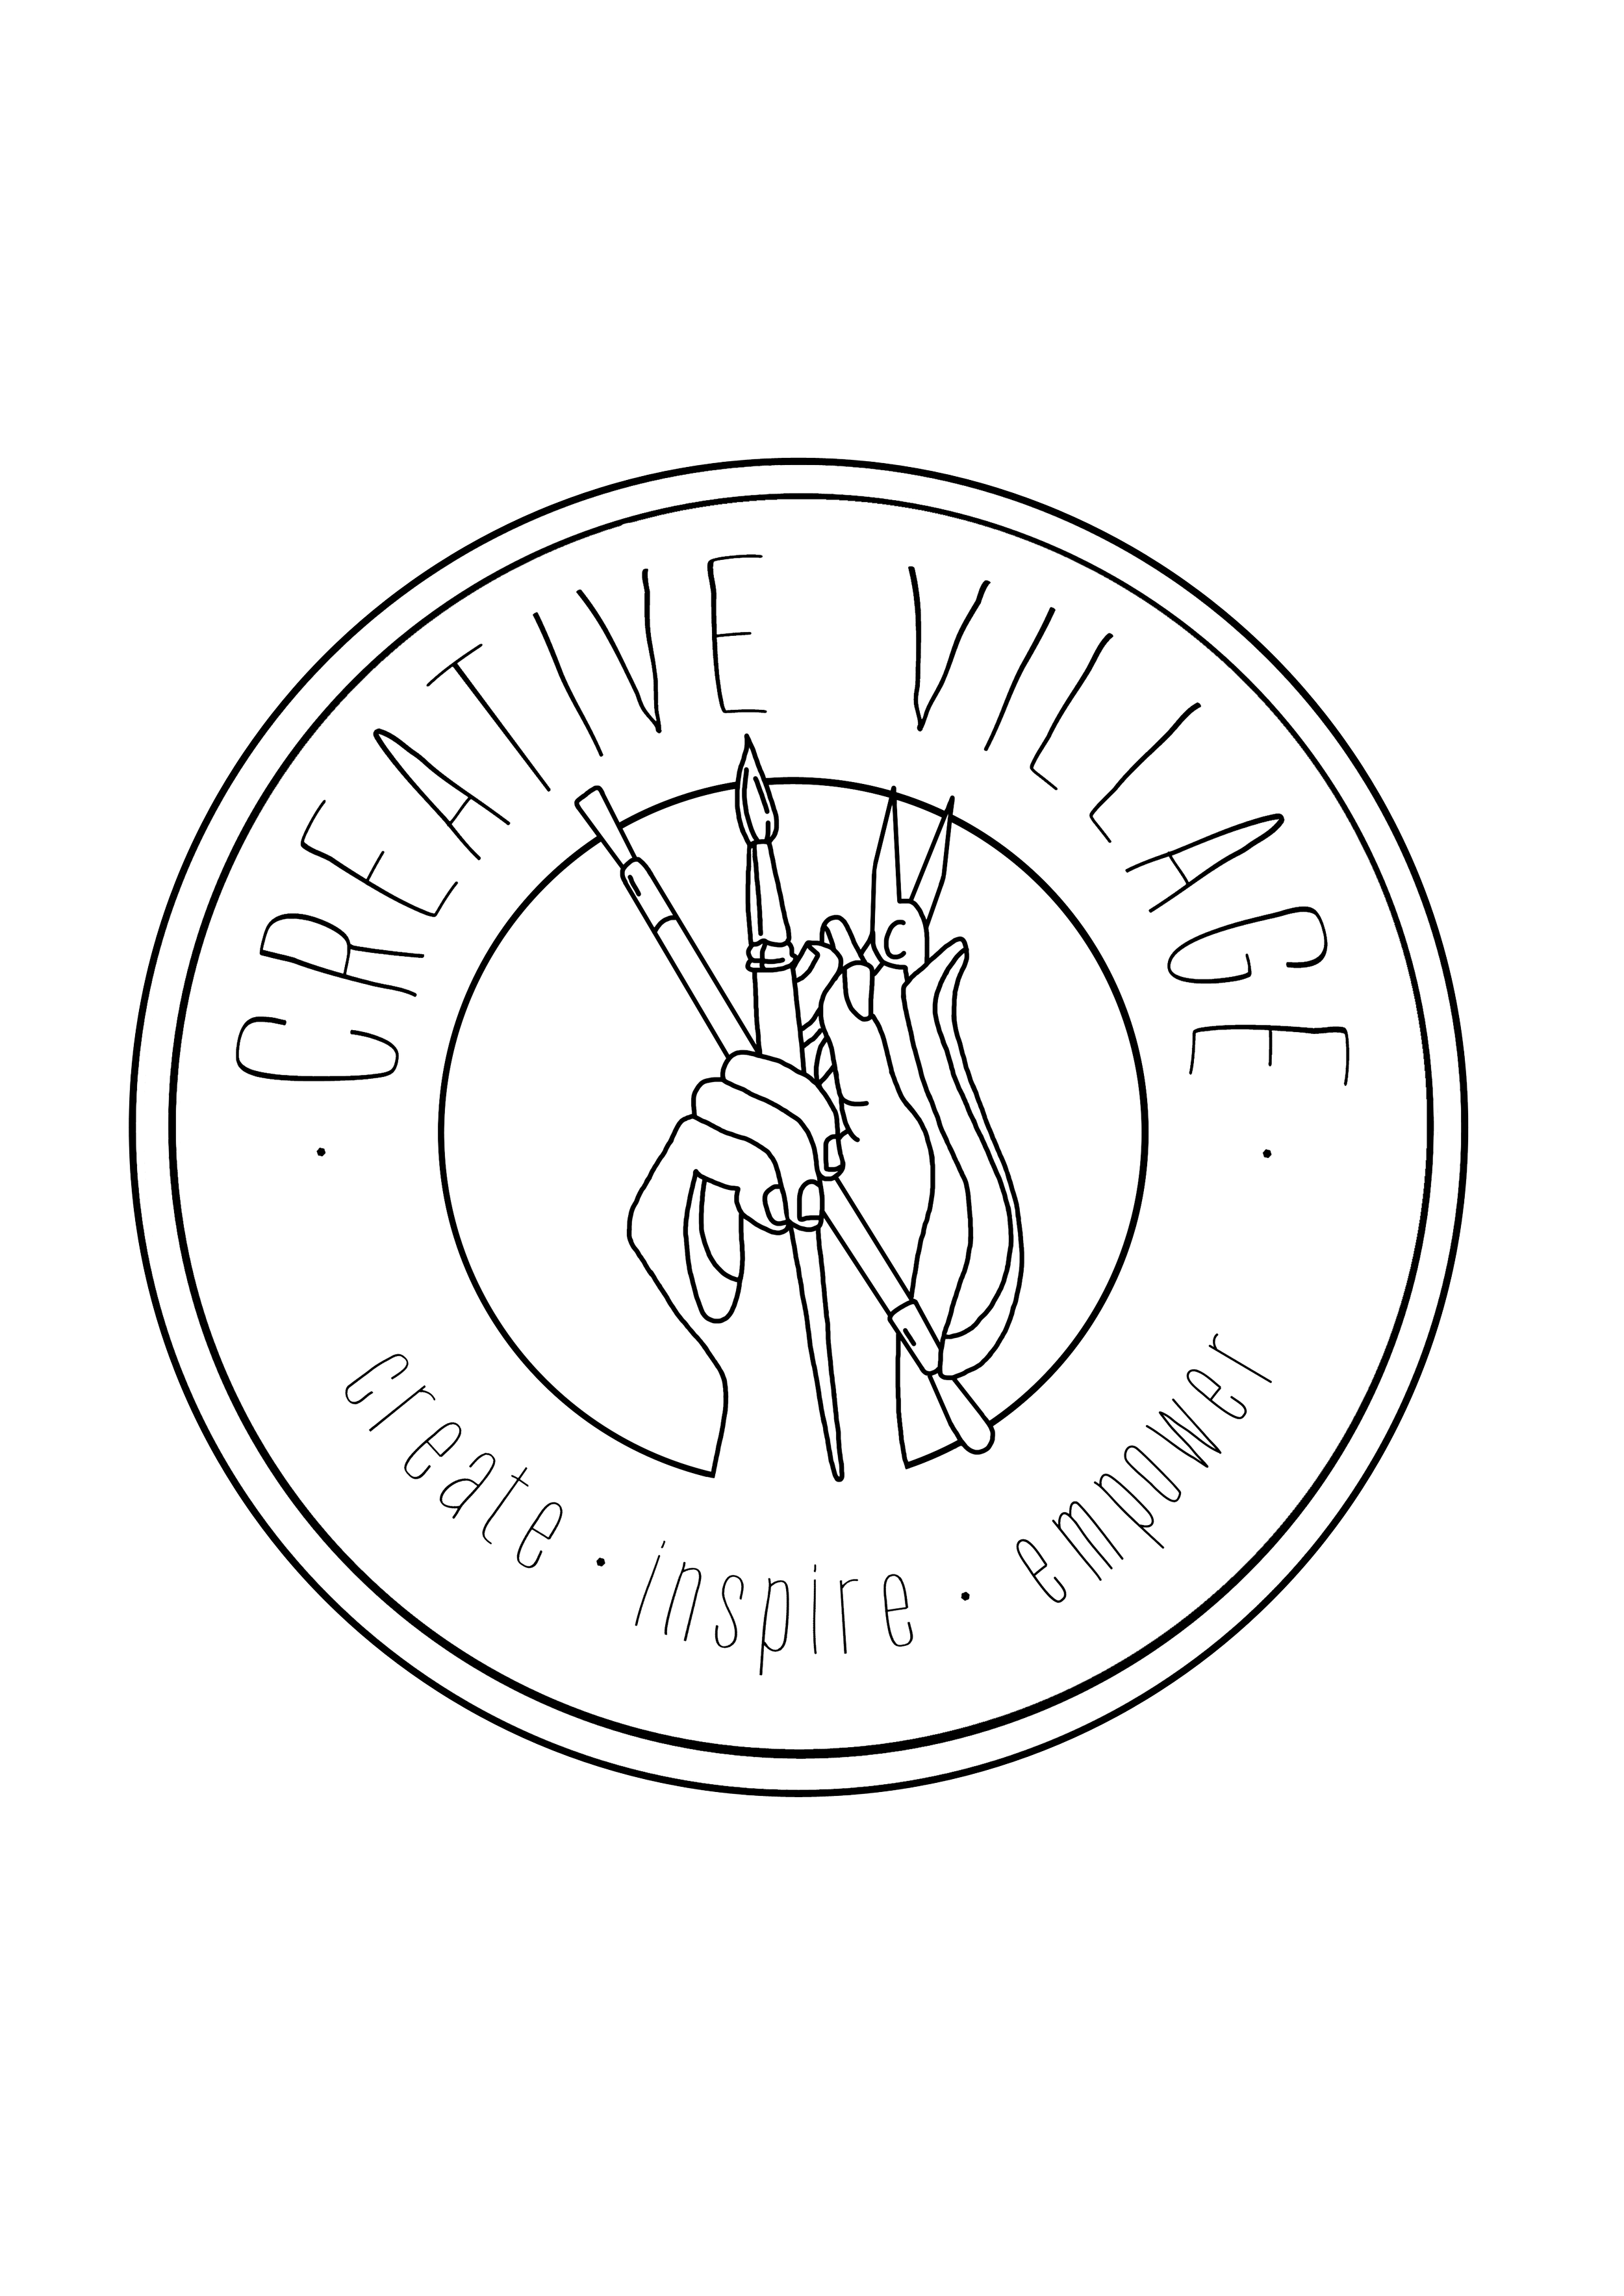 Creative Village